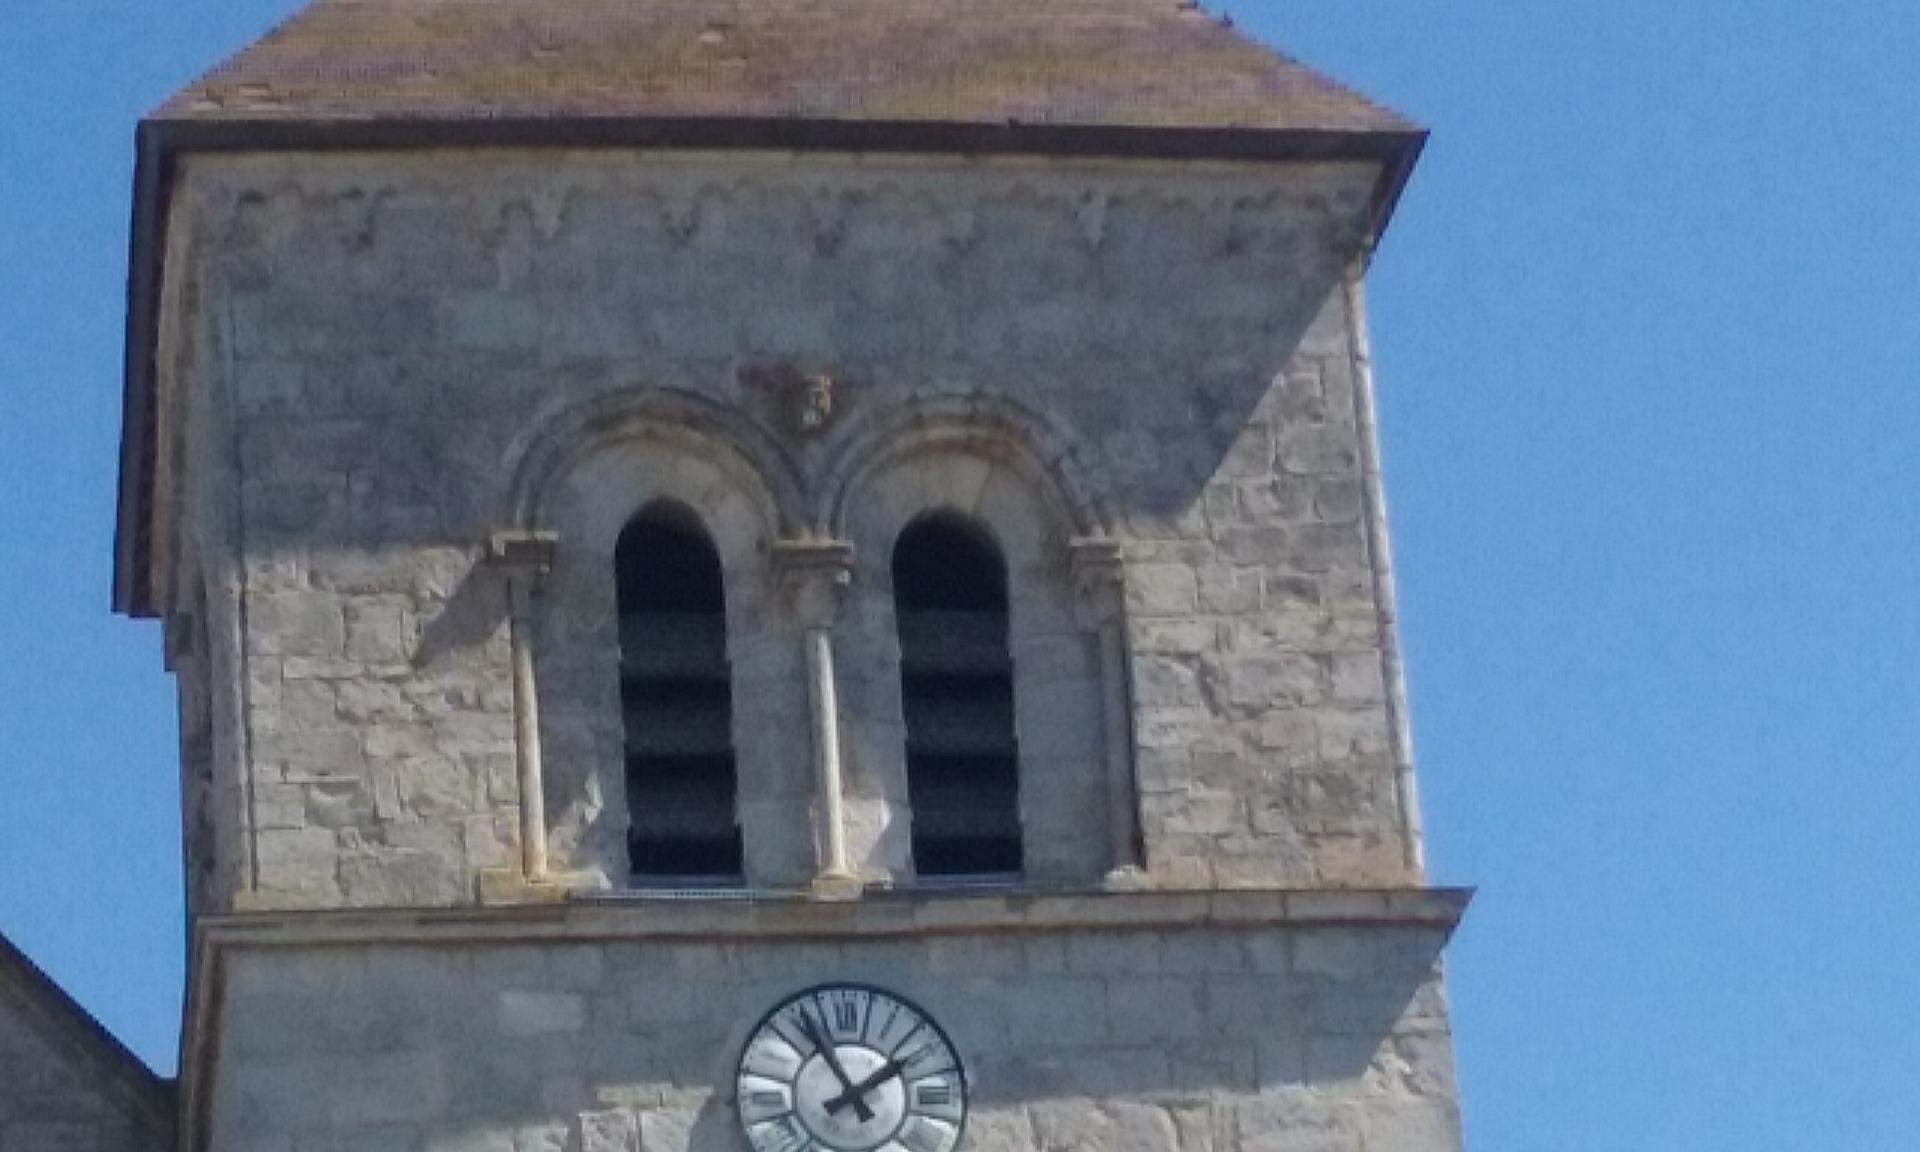 Le clocher , façade sud avec la frise et un babouin.